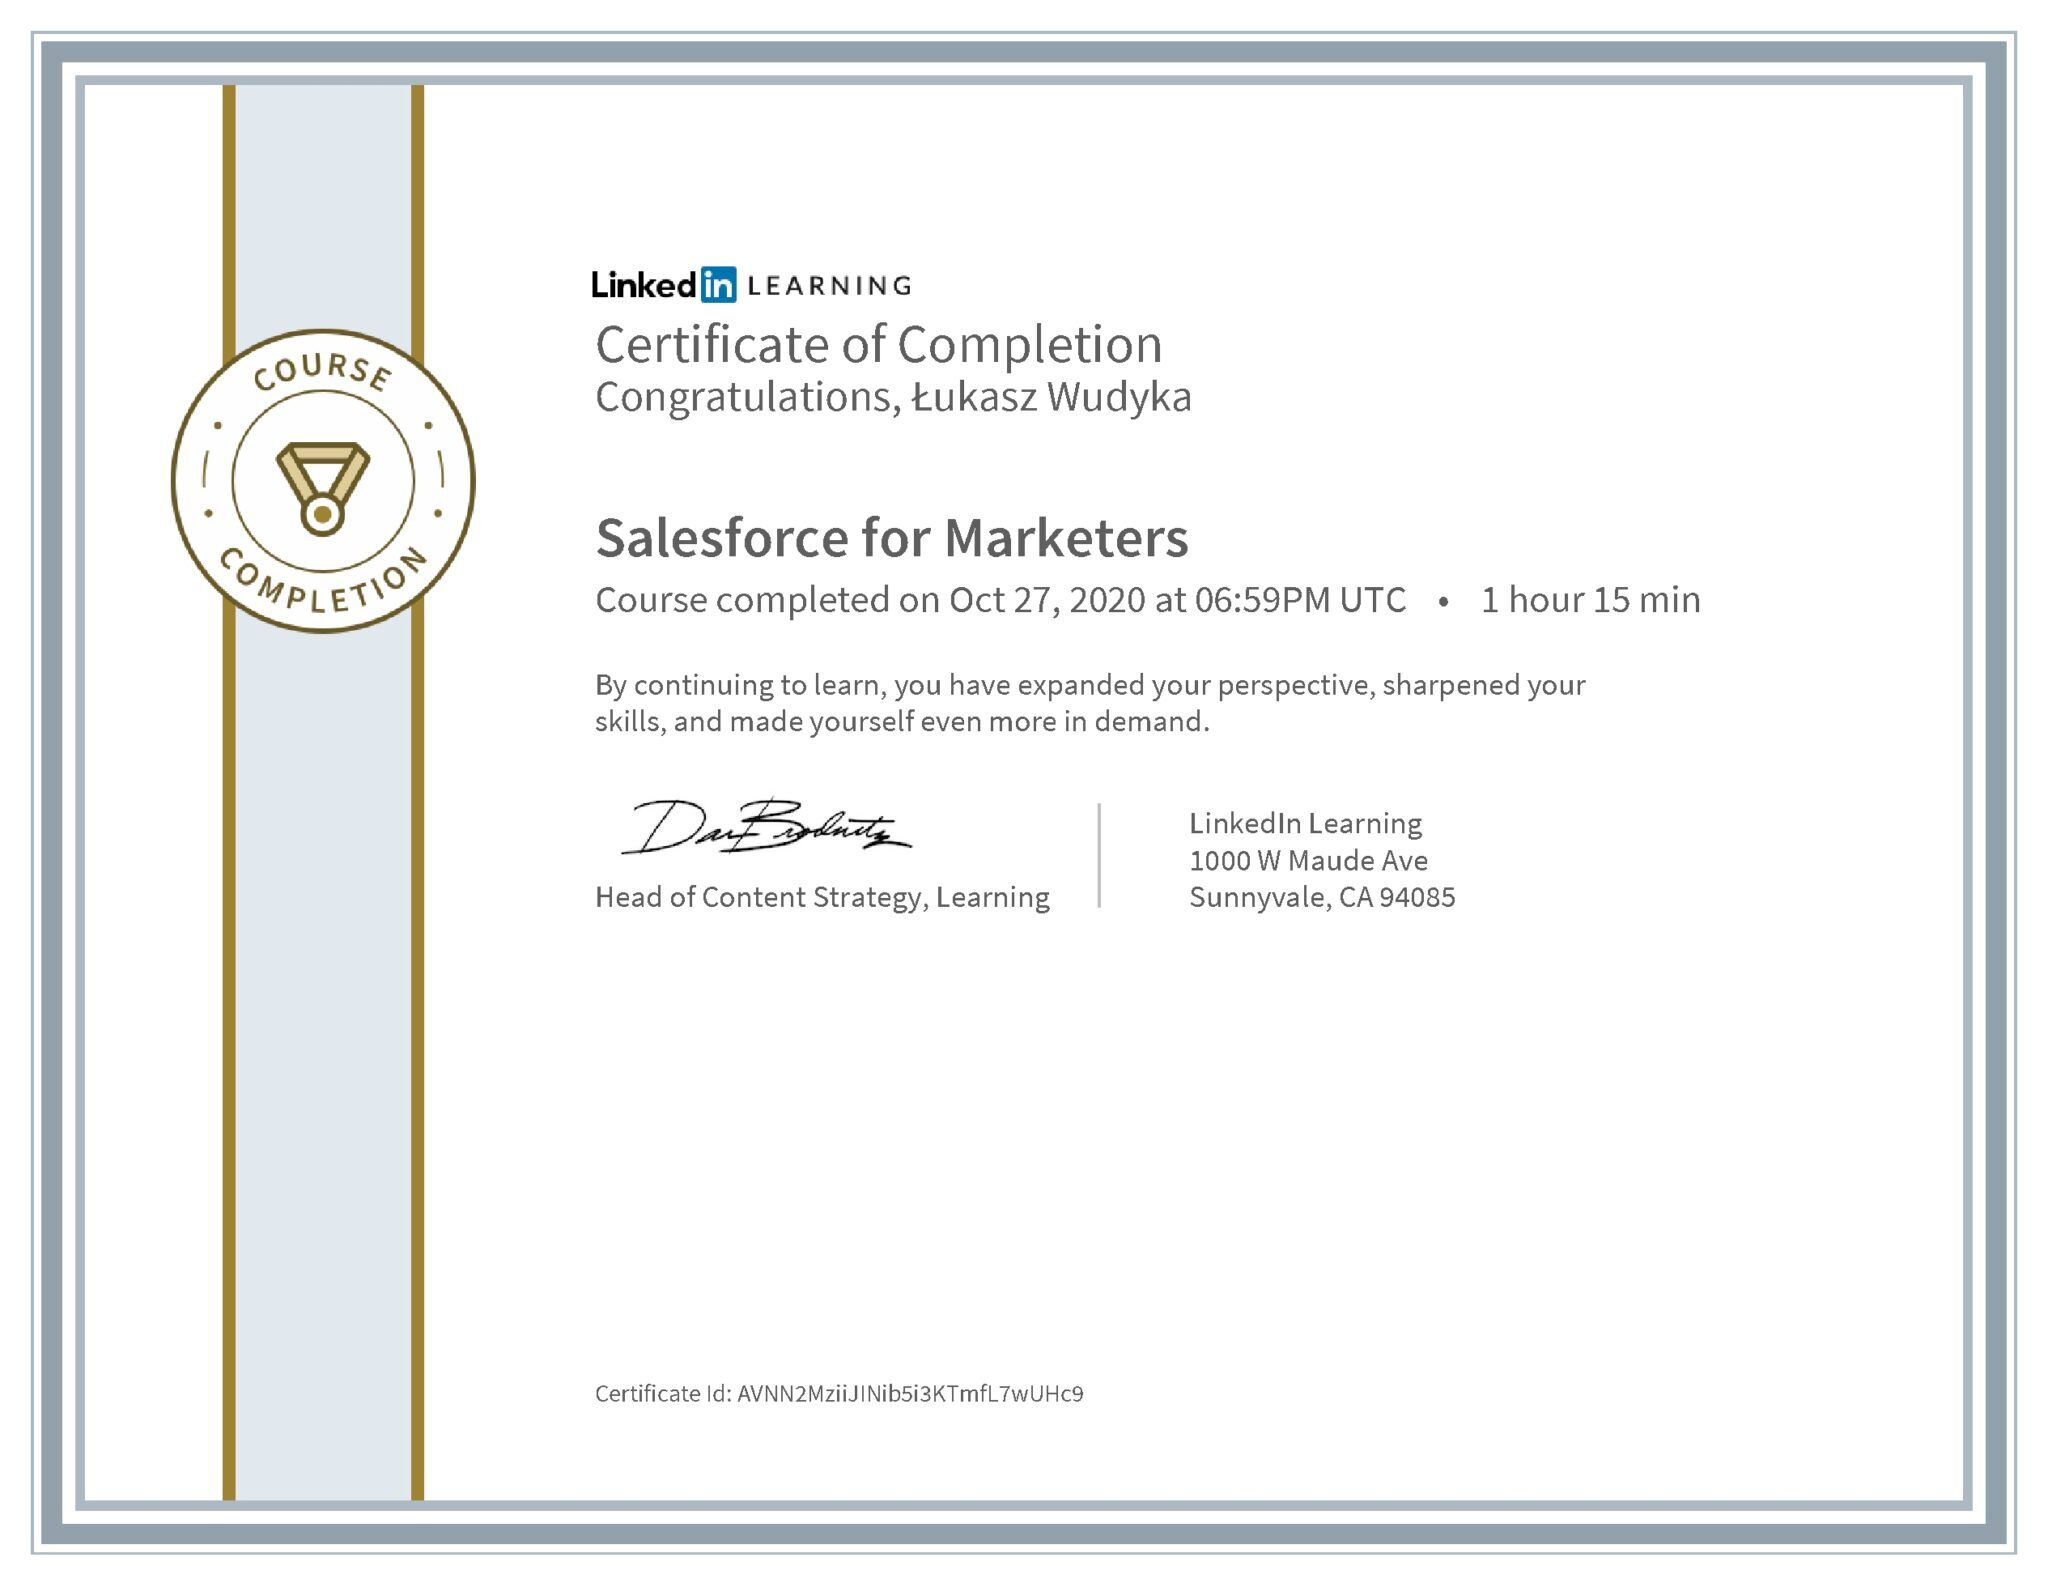 Łukasz Wudyka certyfikat LinkedIn Salesforce for Marketers